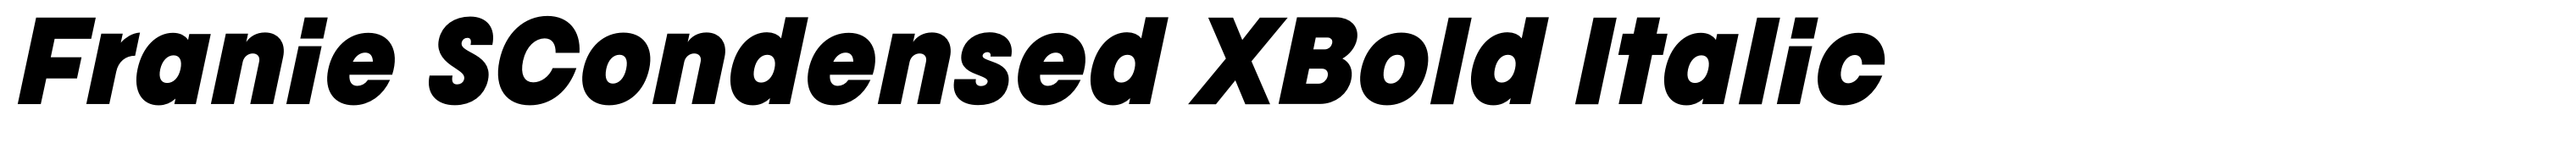 Franie SCondensed XBold Italic